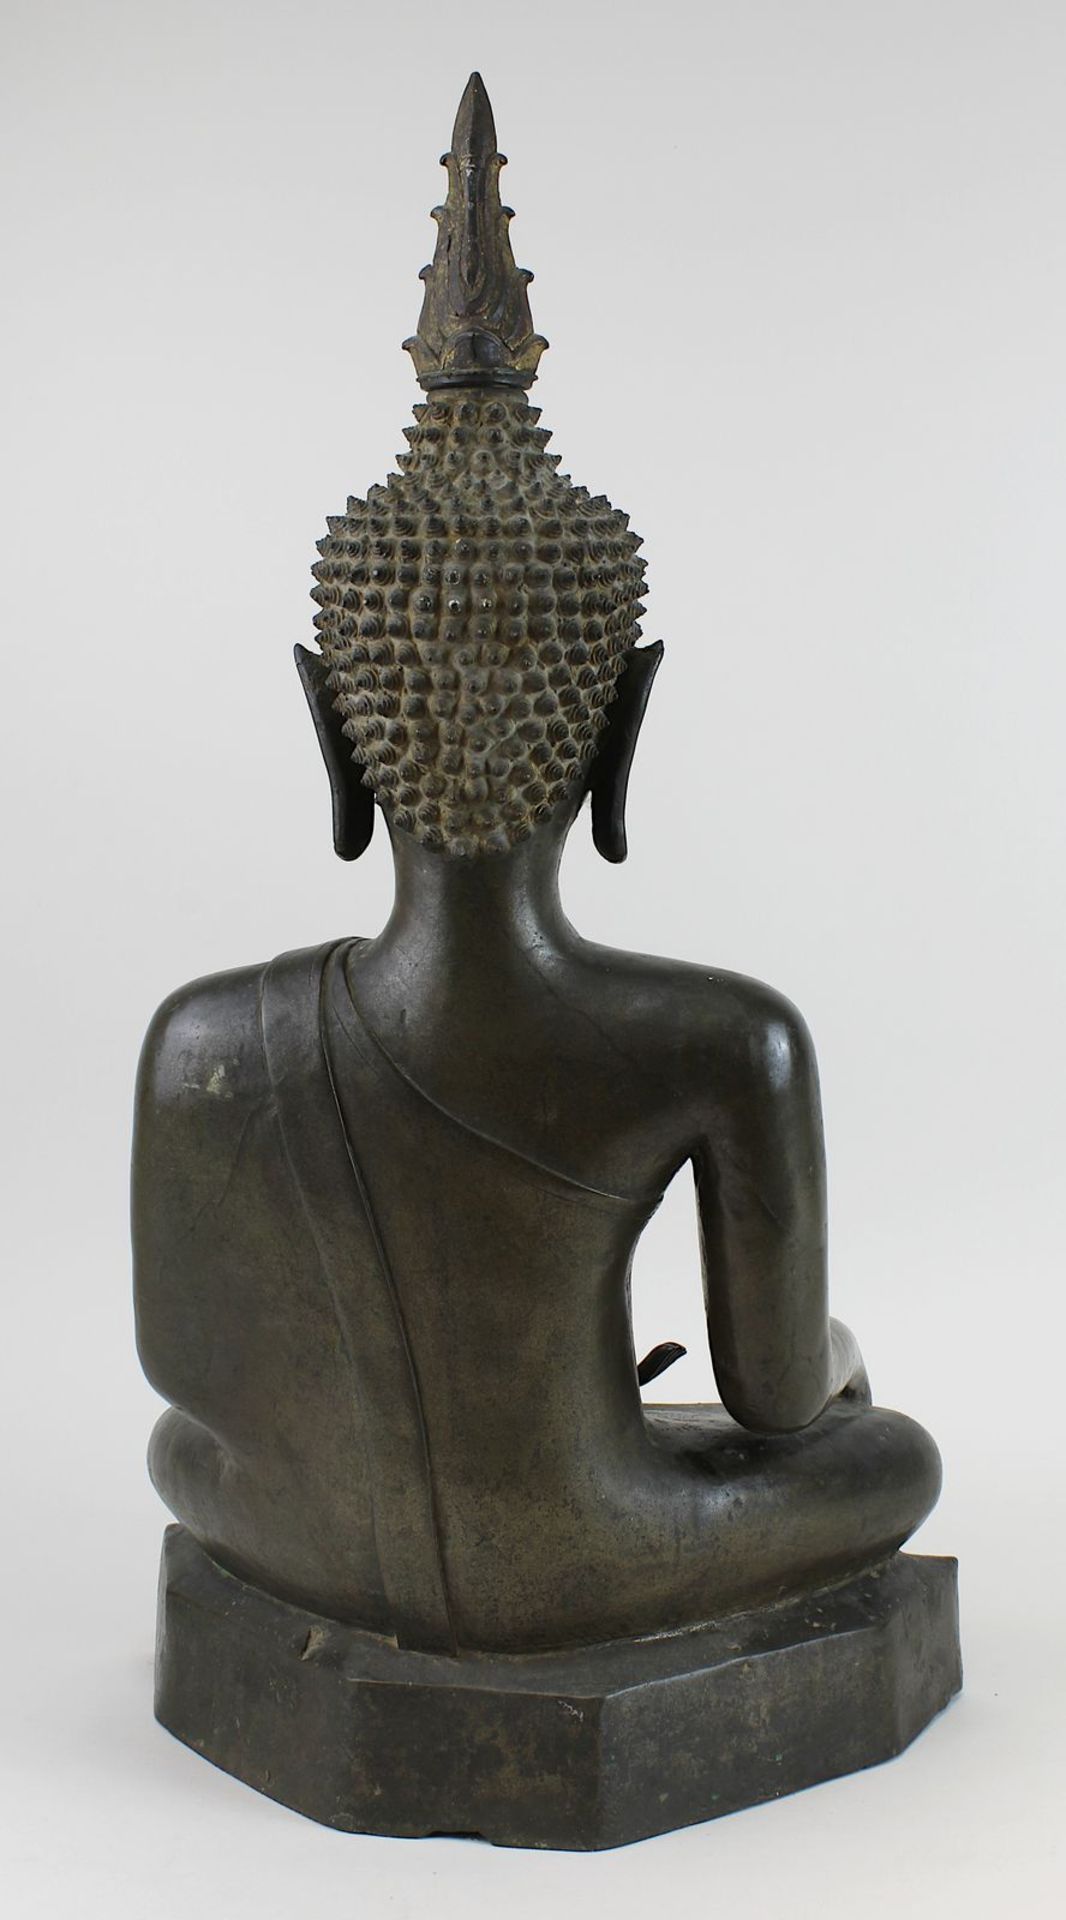 Großer Bronze-Buddha, Siam wohl um 1800, Buddha in Meditationshaltung auf glattem mehreckigem Sockel - Bild 3 aus 6